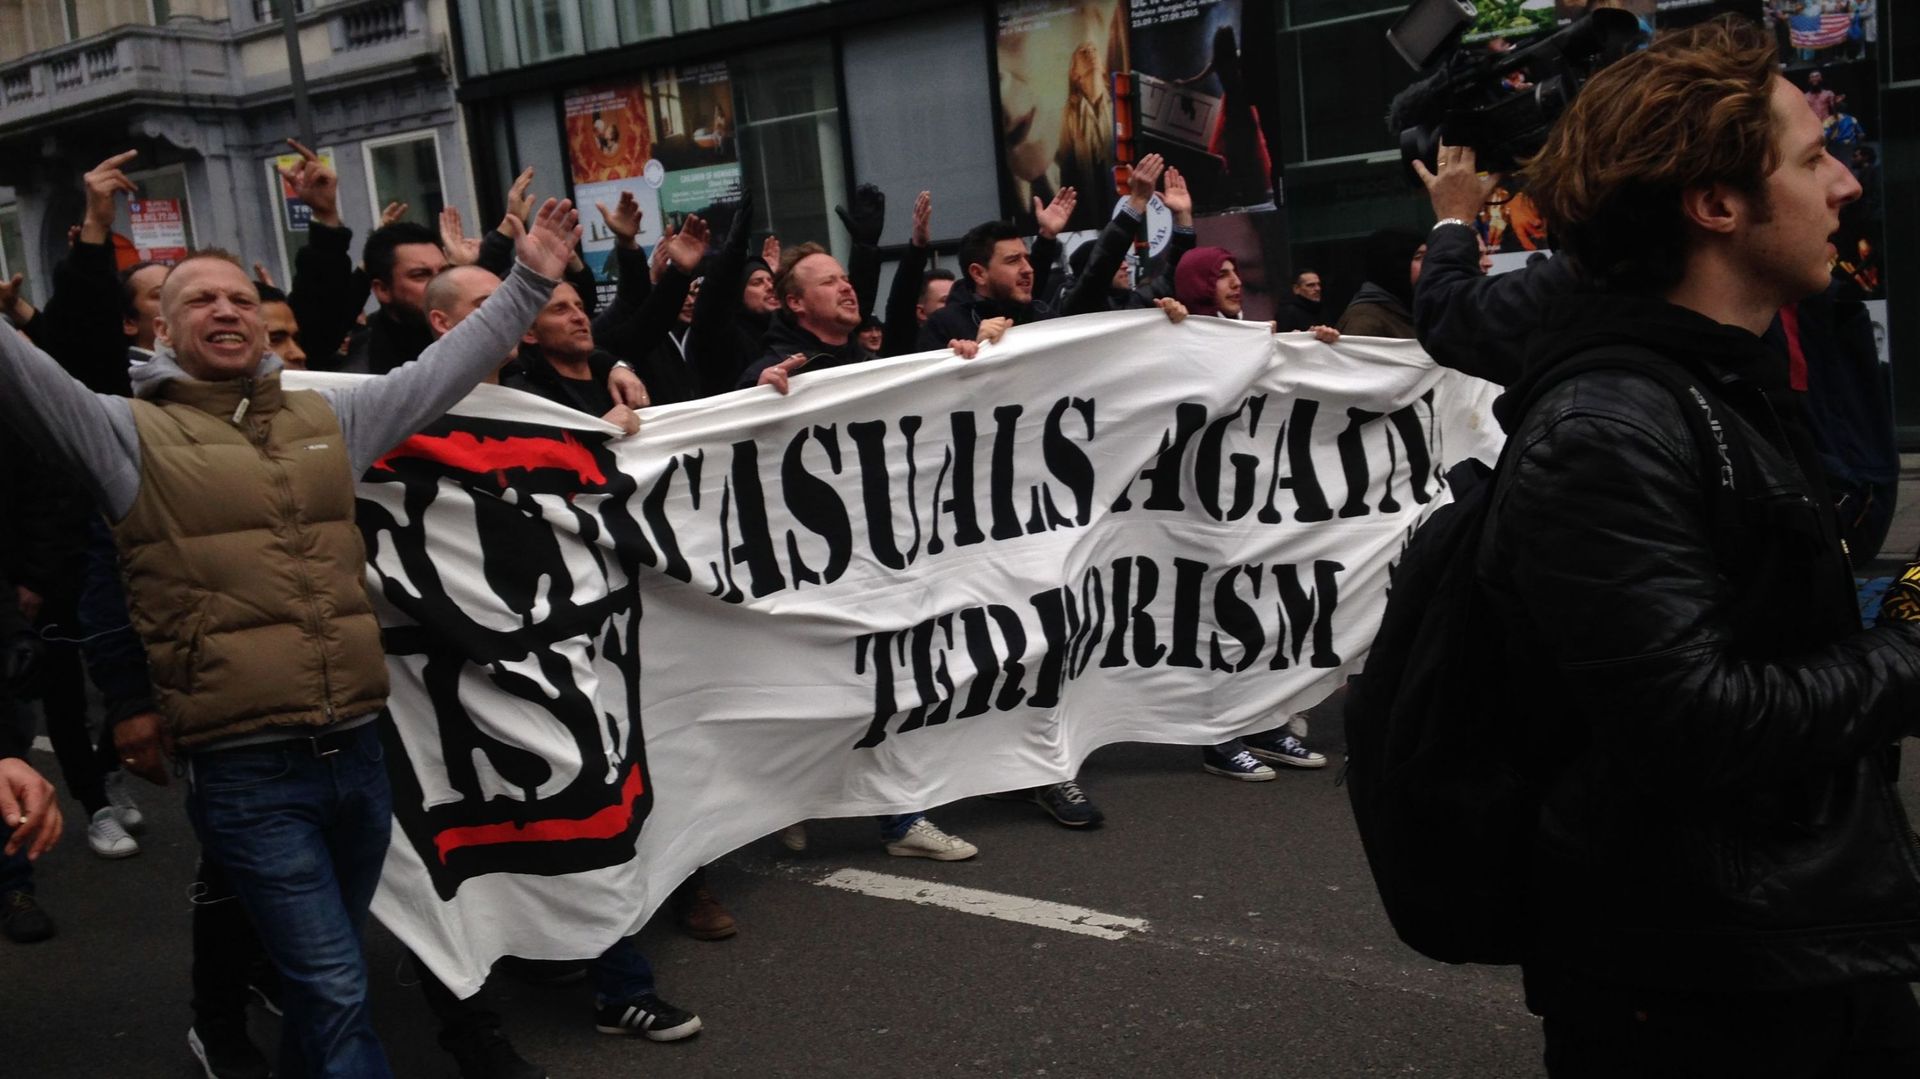 Des hommes en noir sont arrivés avec une bannière "Casual against terrorism"